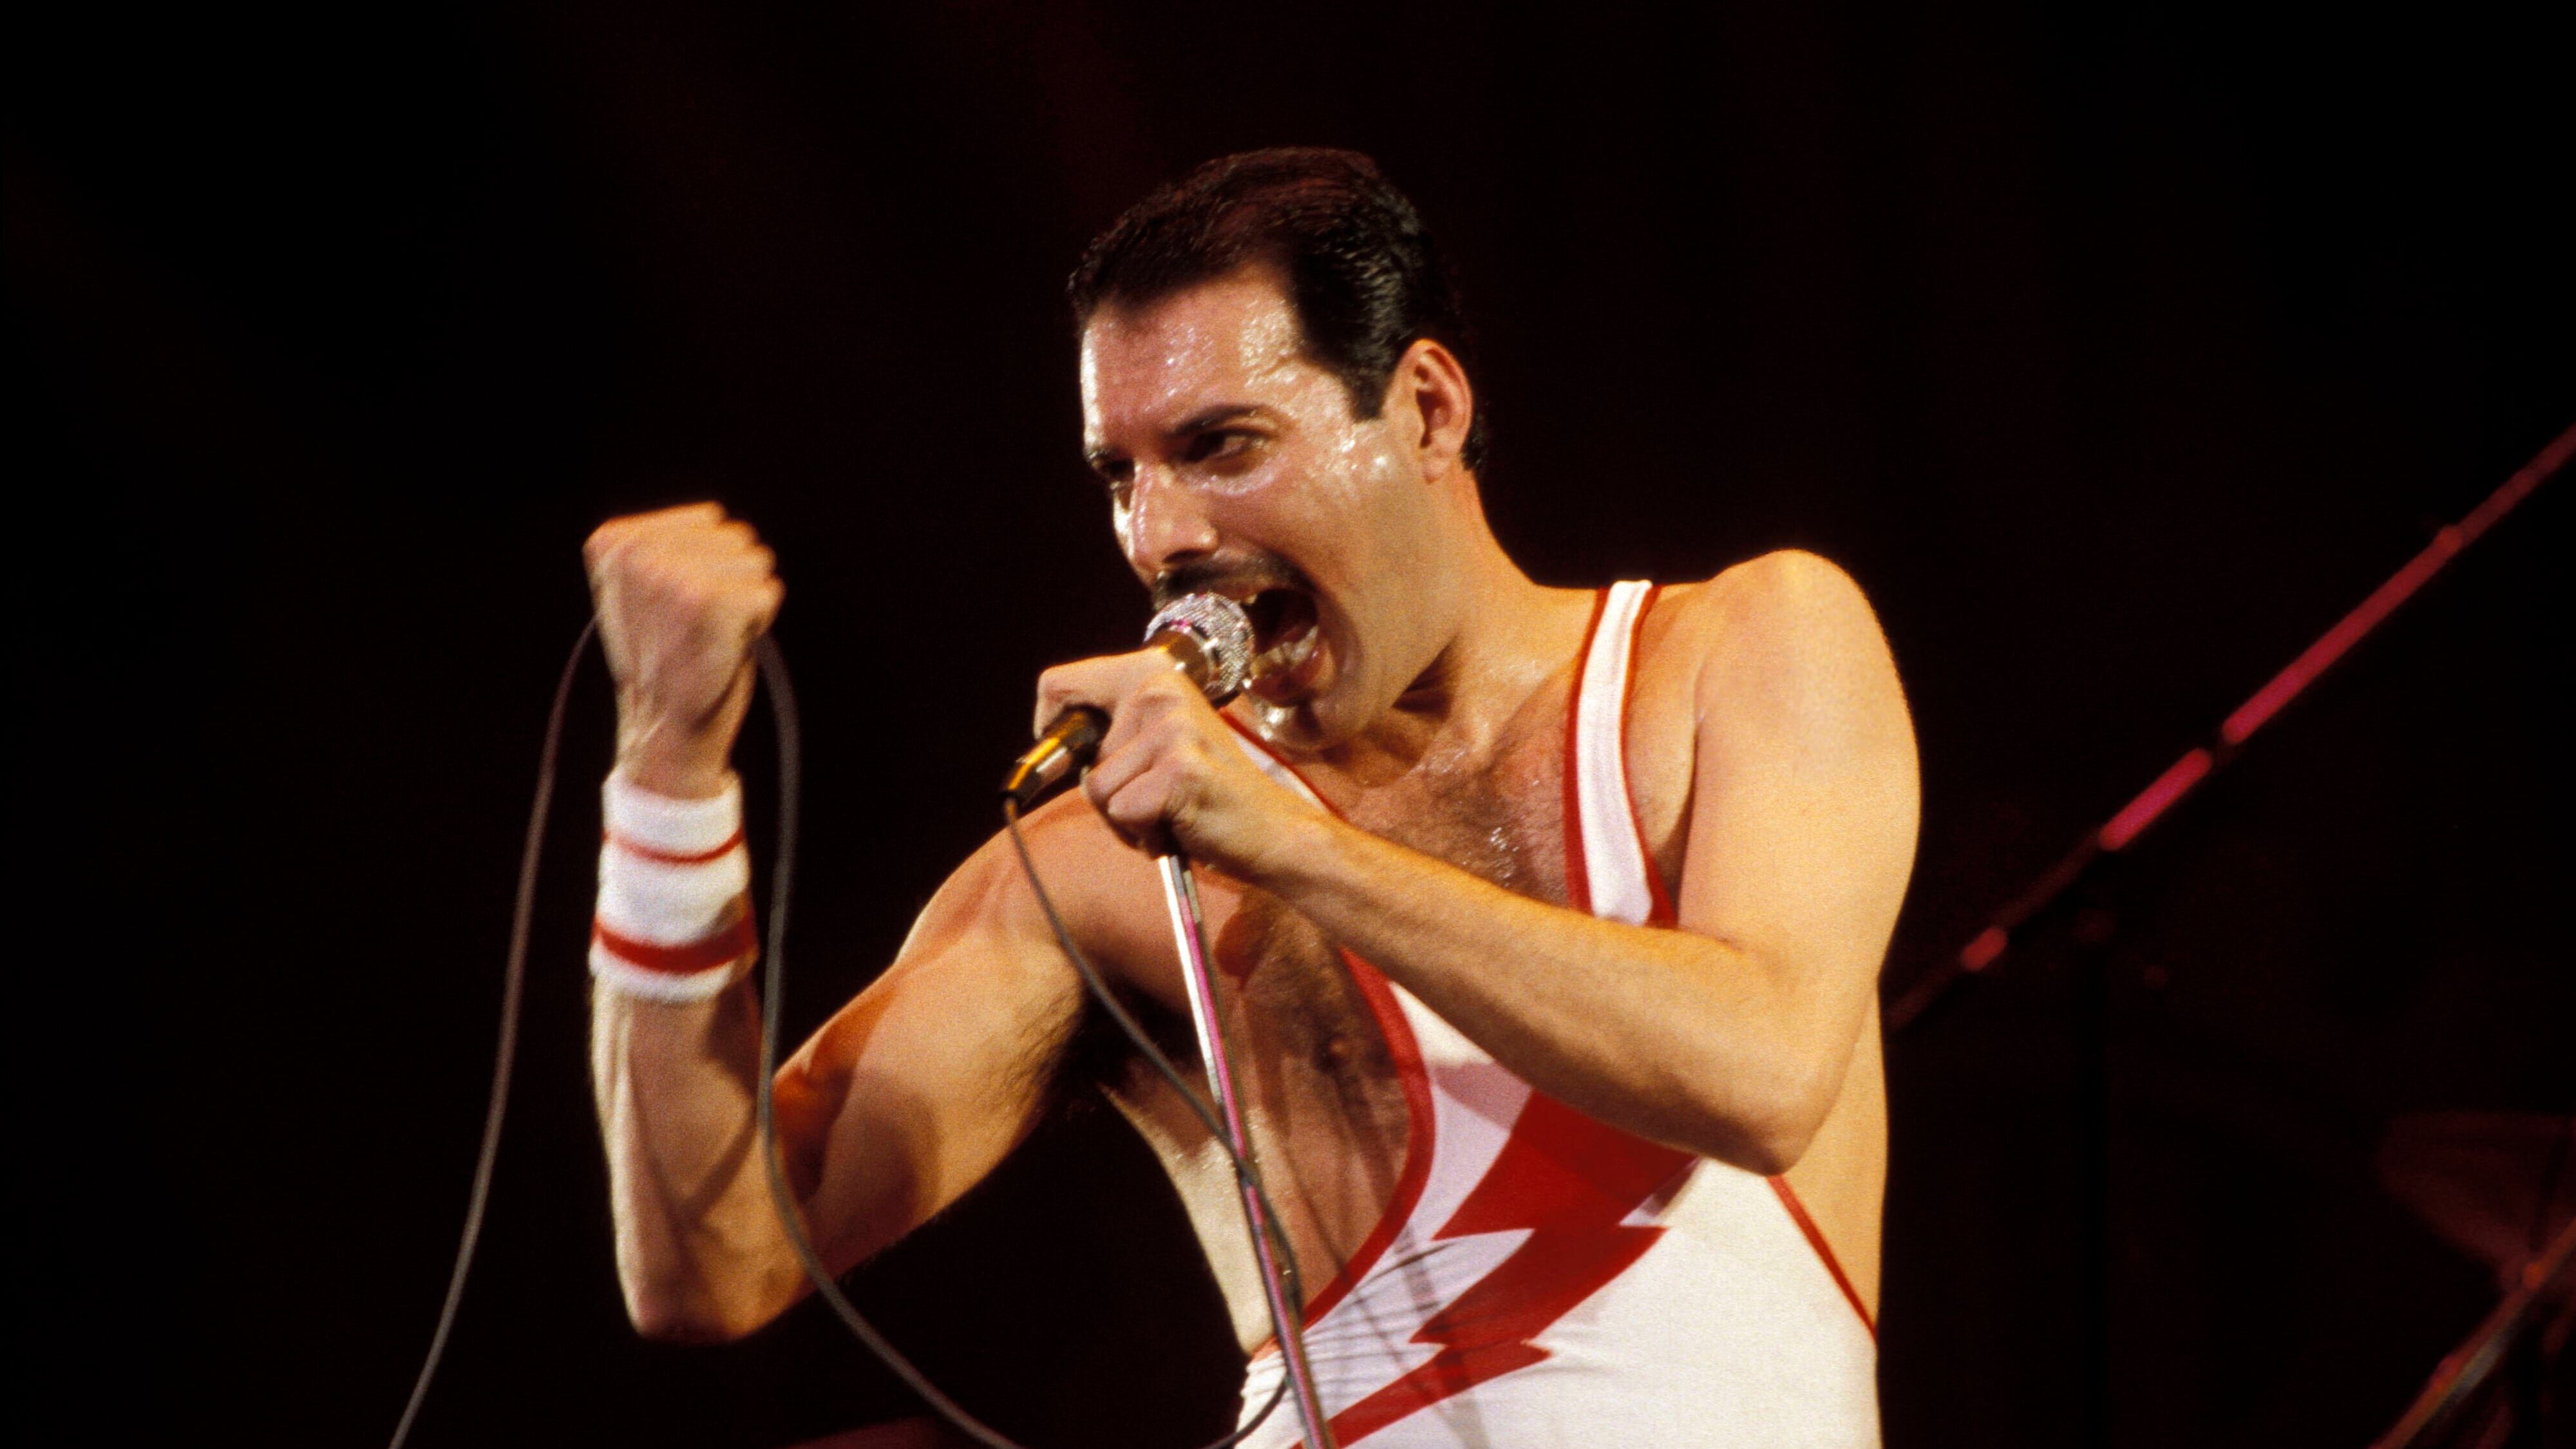 Freddie Mercury: Der letzte Akt